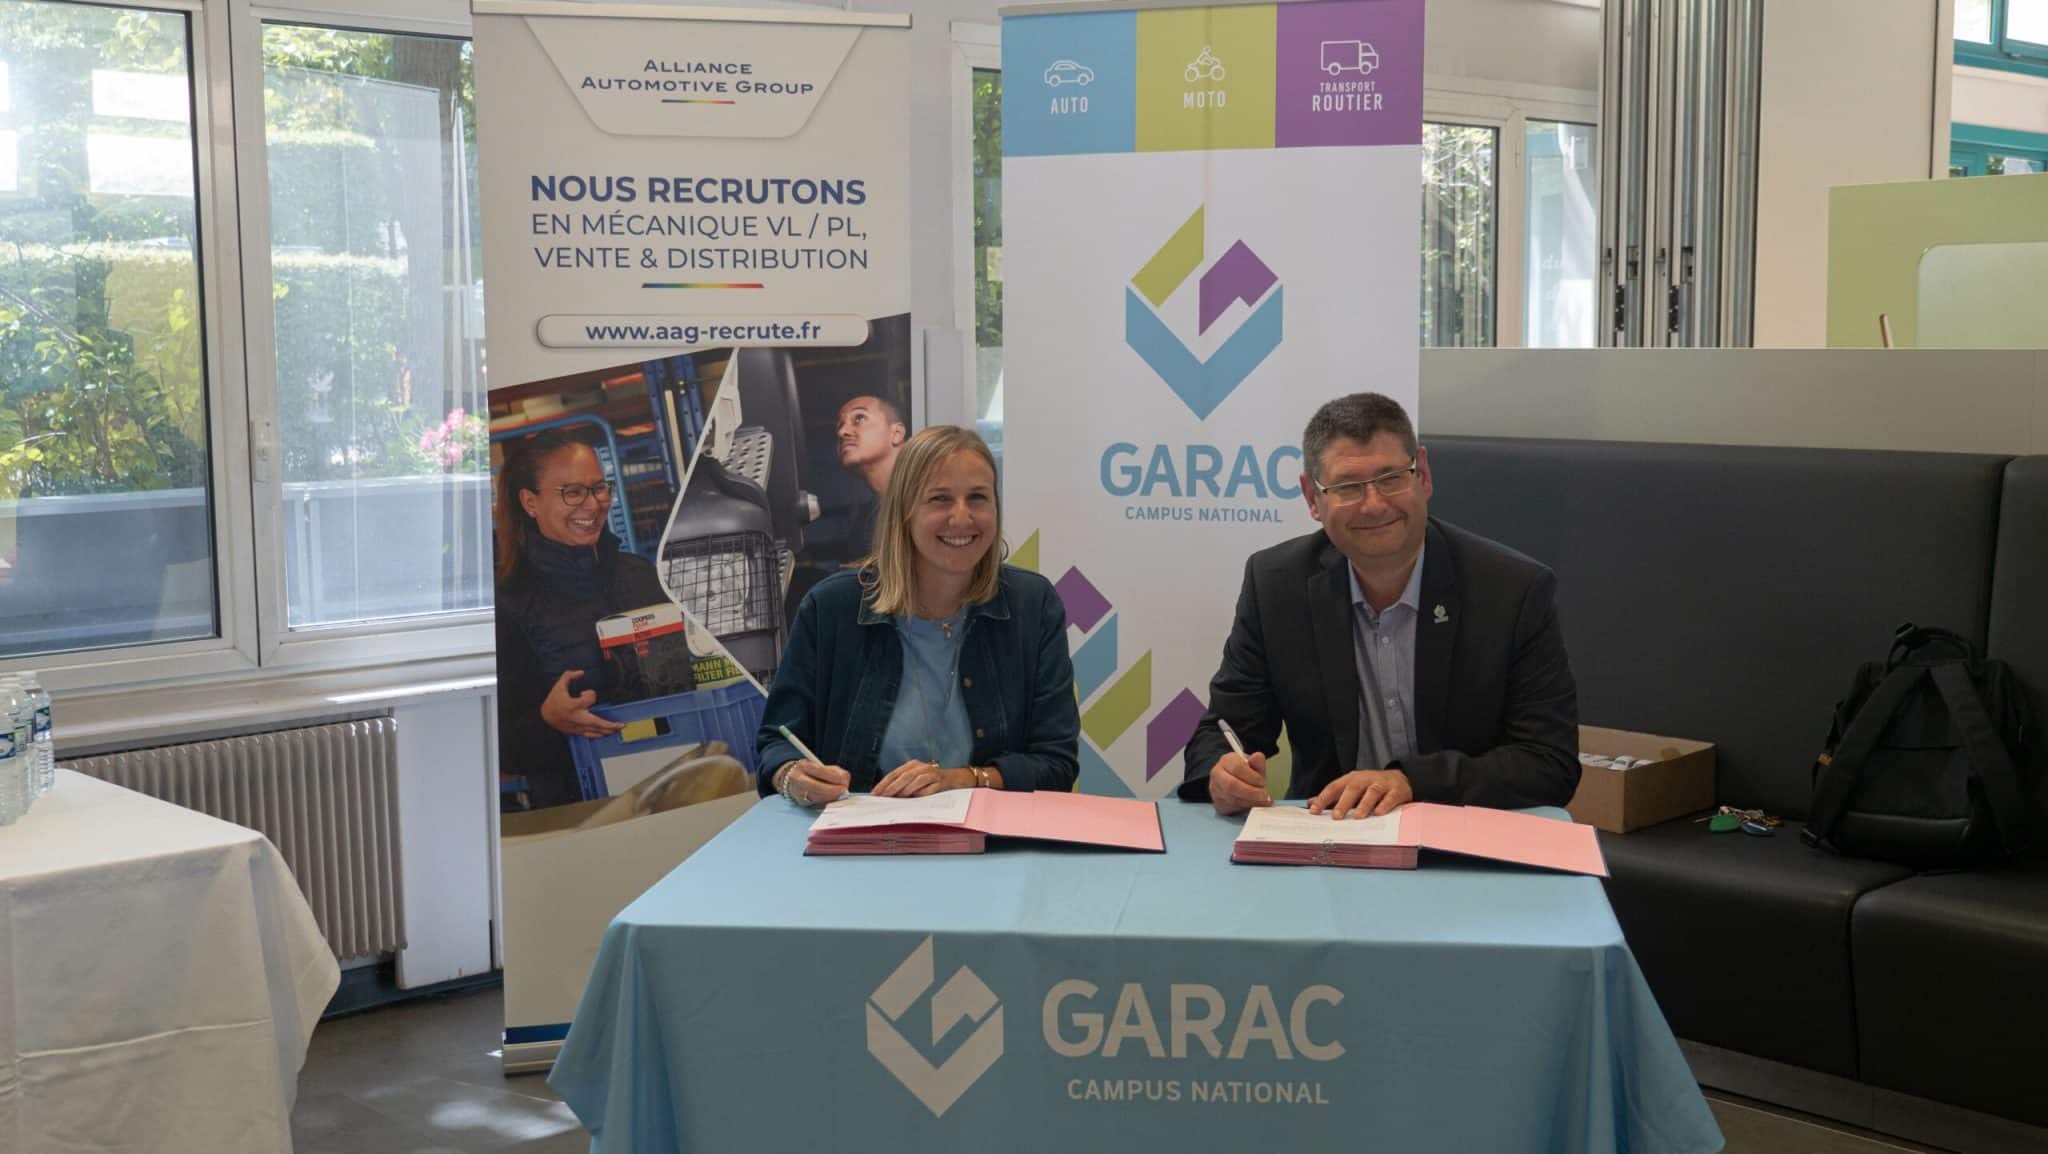 Alliance Automotive signe une convention de partenariat avec le GARAC